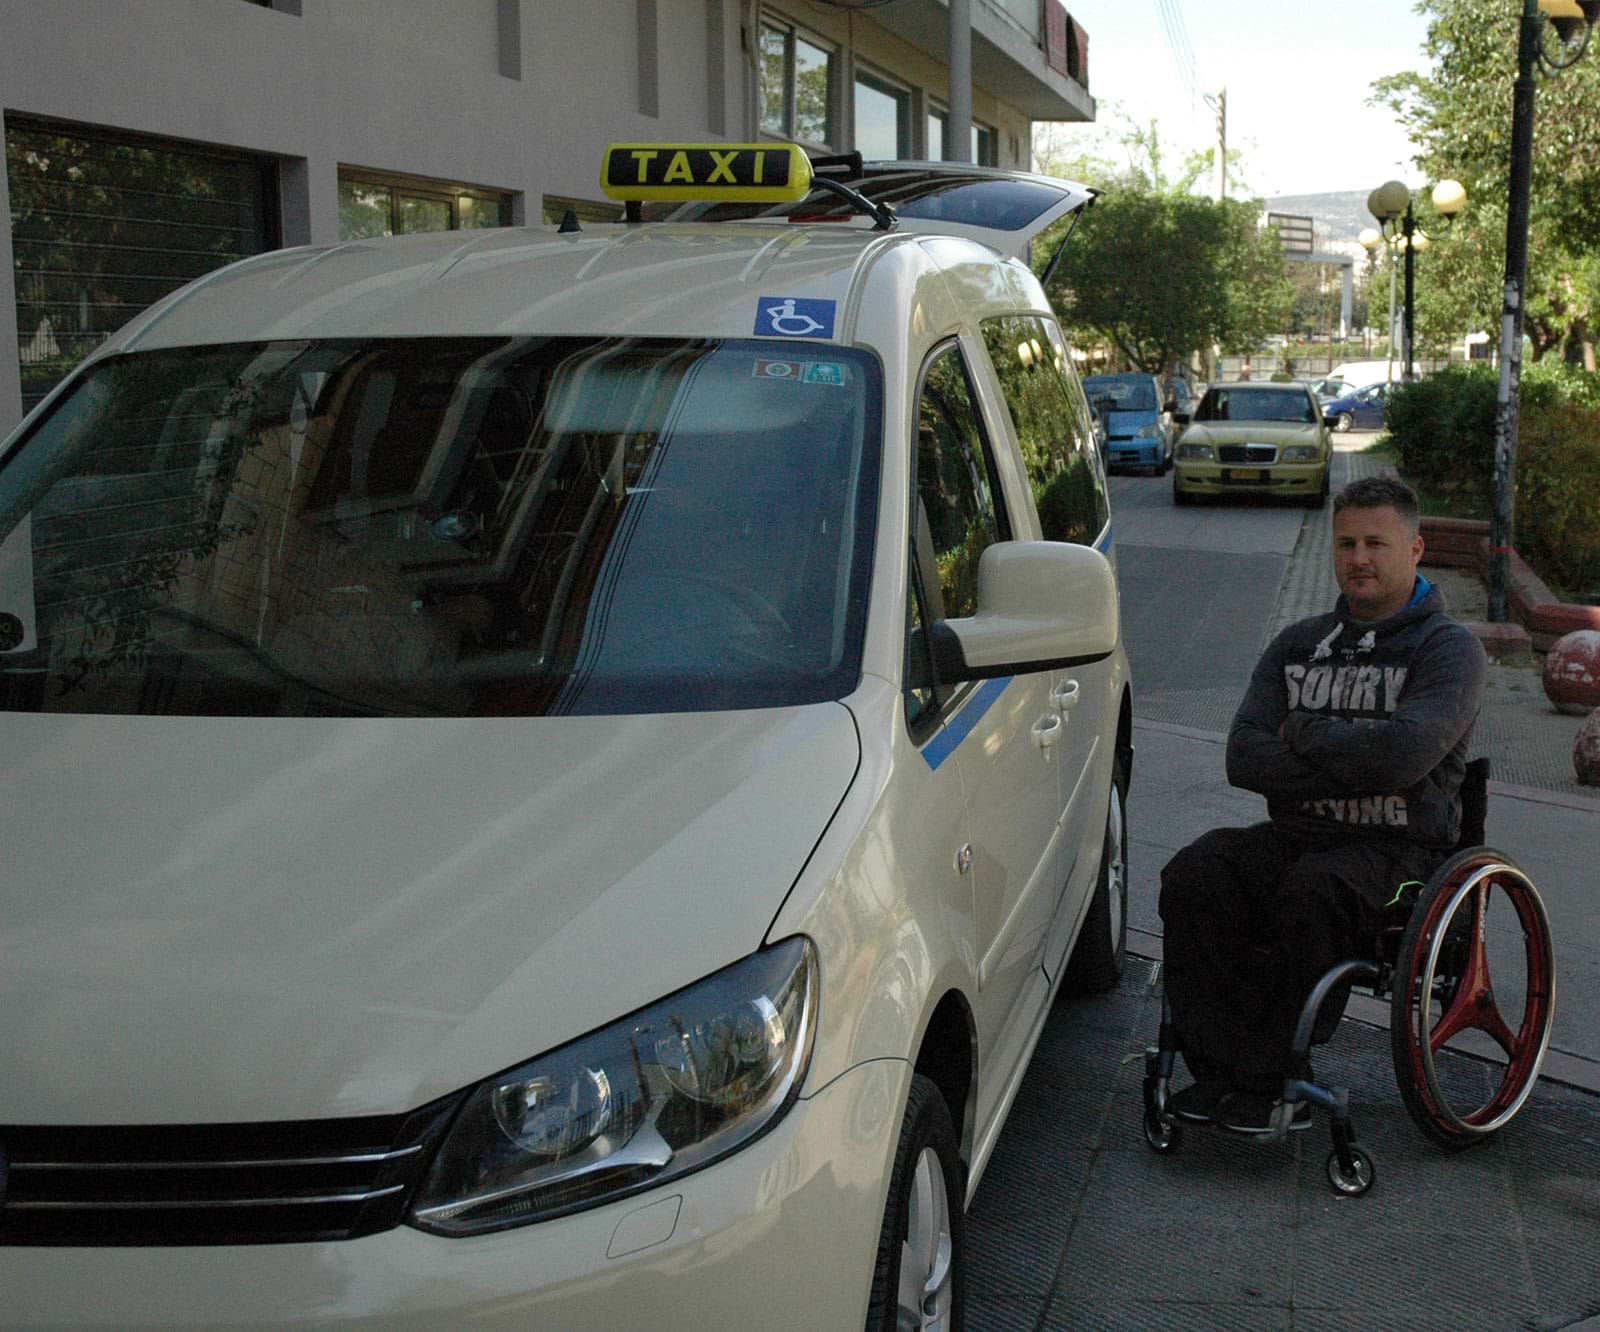 ειδικό ταξί με ράμπα για αναπηρικό αμαξίδιο